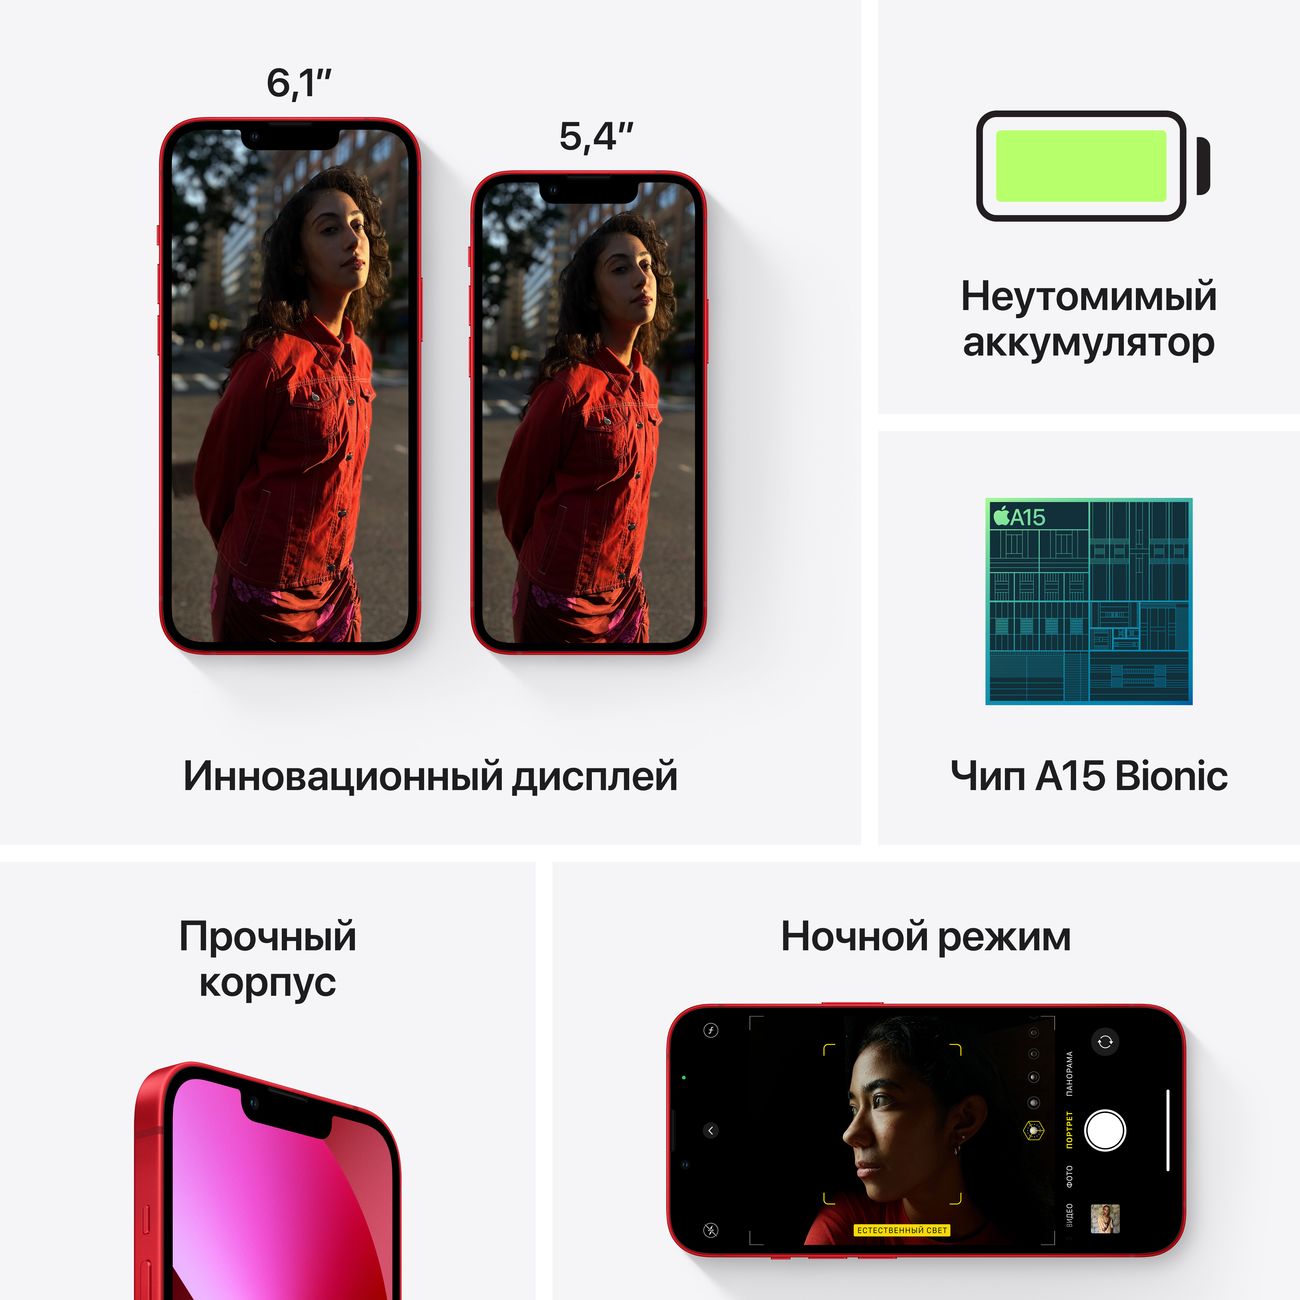 Купить смартфон apple iphone 13 128gb starlight Apple iPhone 13 в официальном магазине Apple, Samsung, Xiaomi. iPixel.ru Купить, заказ, кредит, рассрочка, отзывы,  характеристики, цена,  фотографии, в подарок.